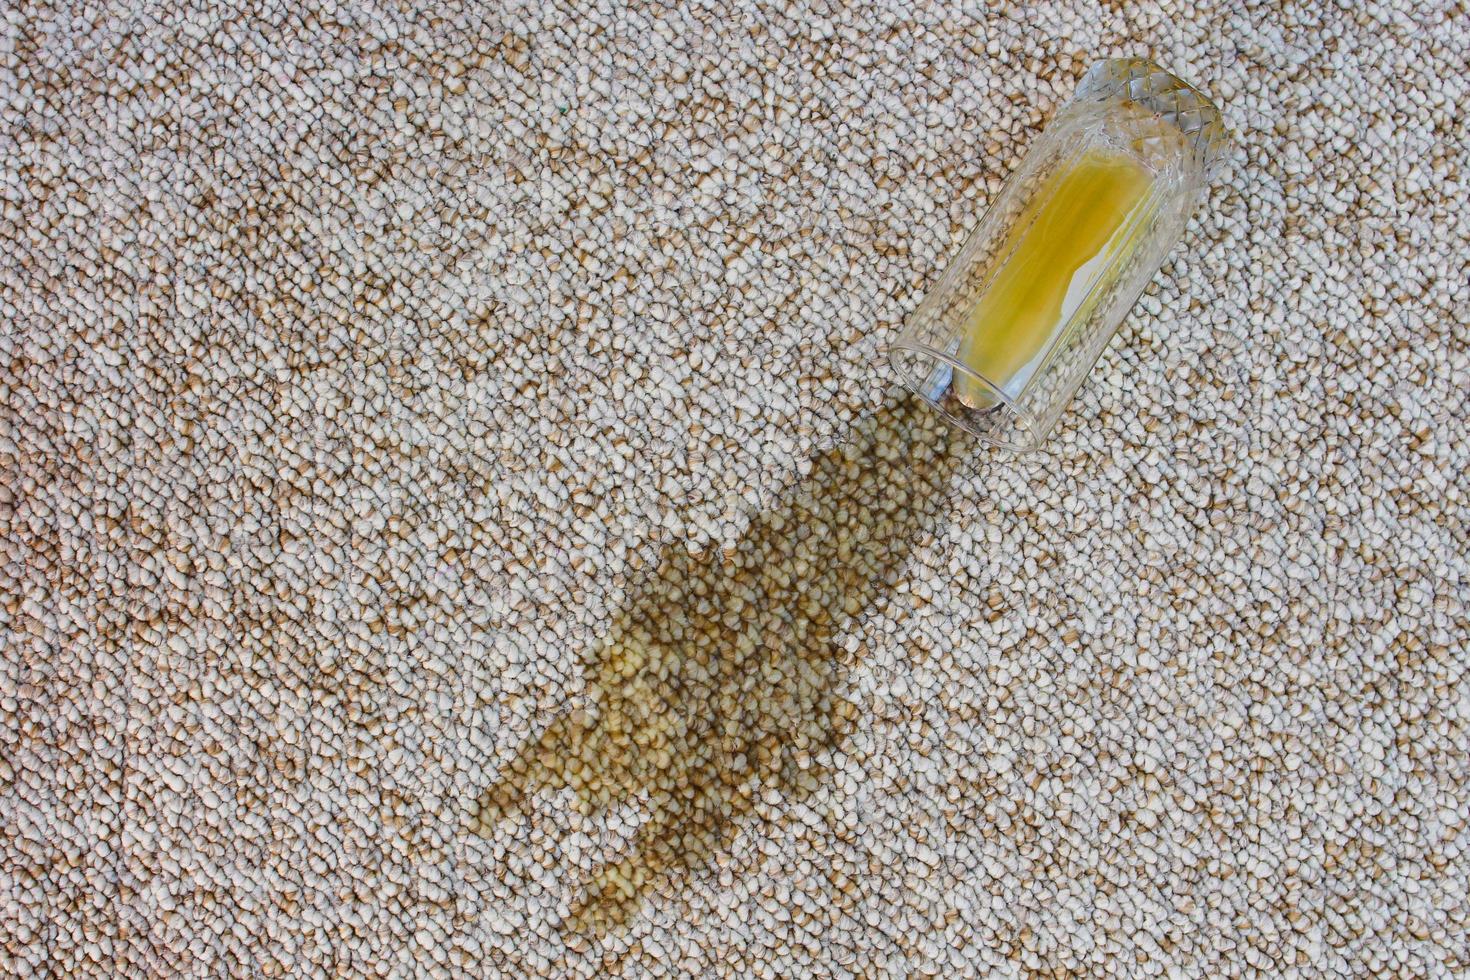 glas av orange juice föll på matta. dryck spillts på golv. svamp och rengöringsmedel. foto